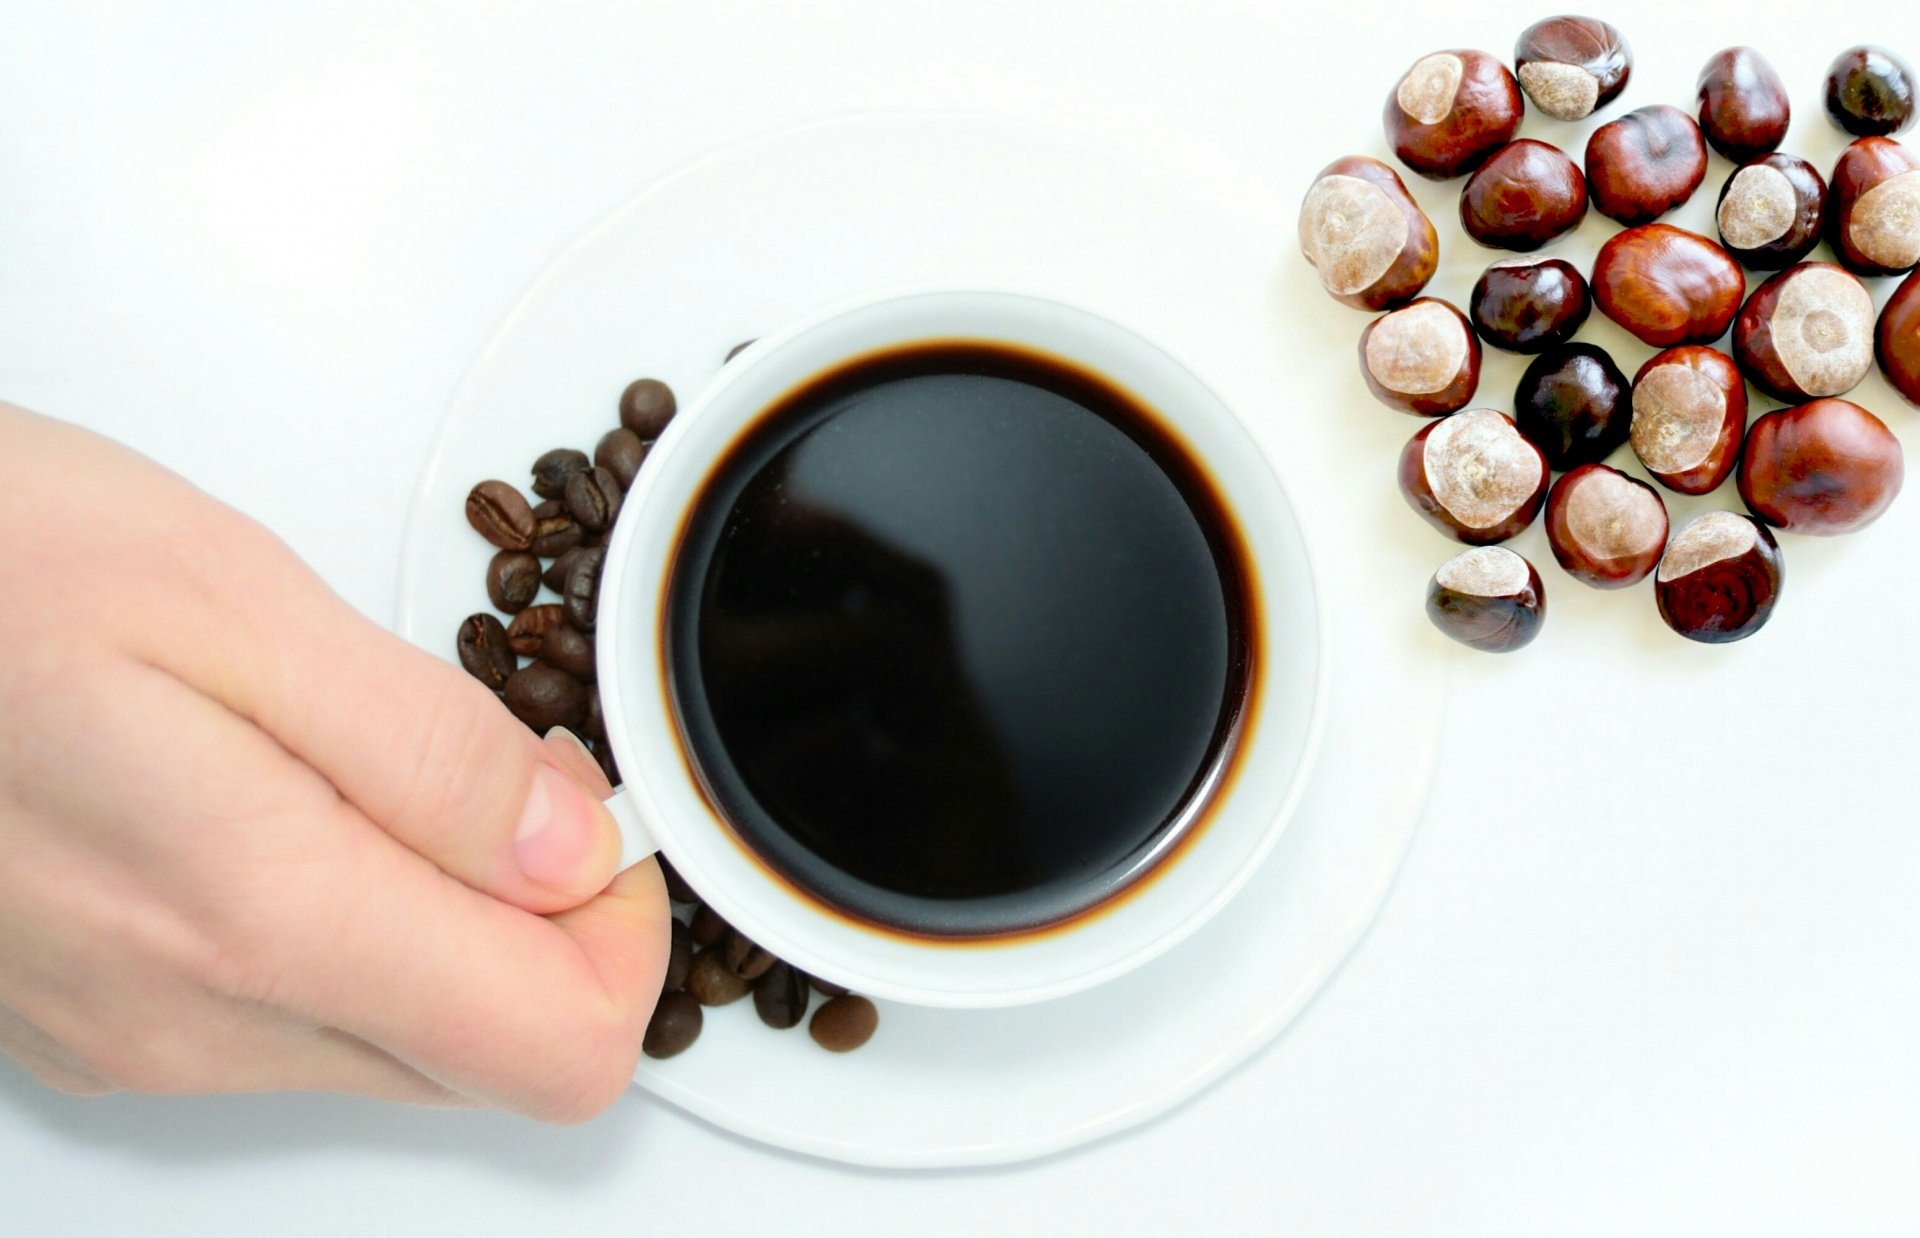 متى تحصل على نتائج عكسية من شرب القهوة؟